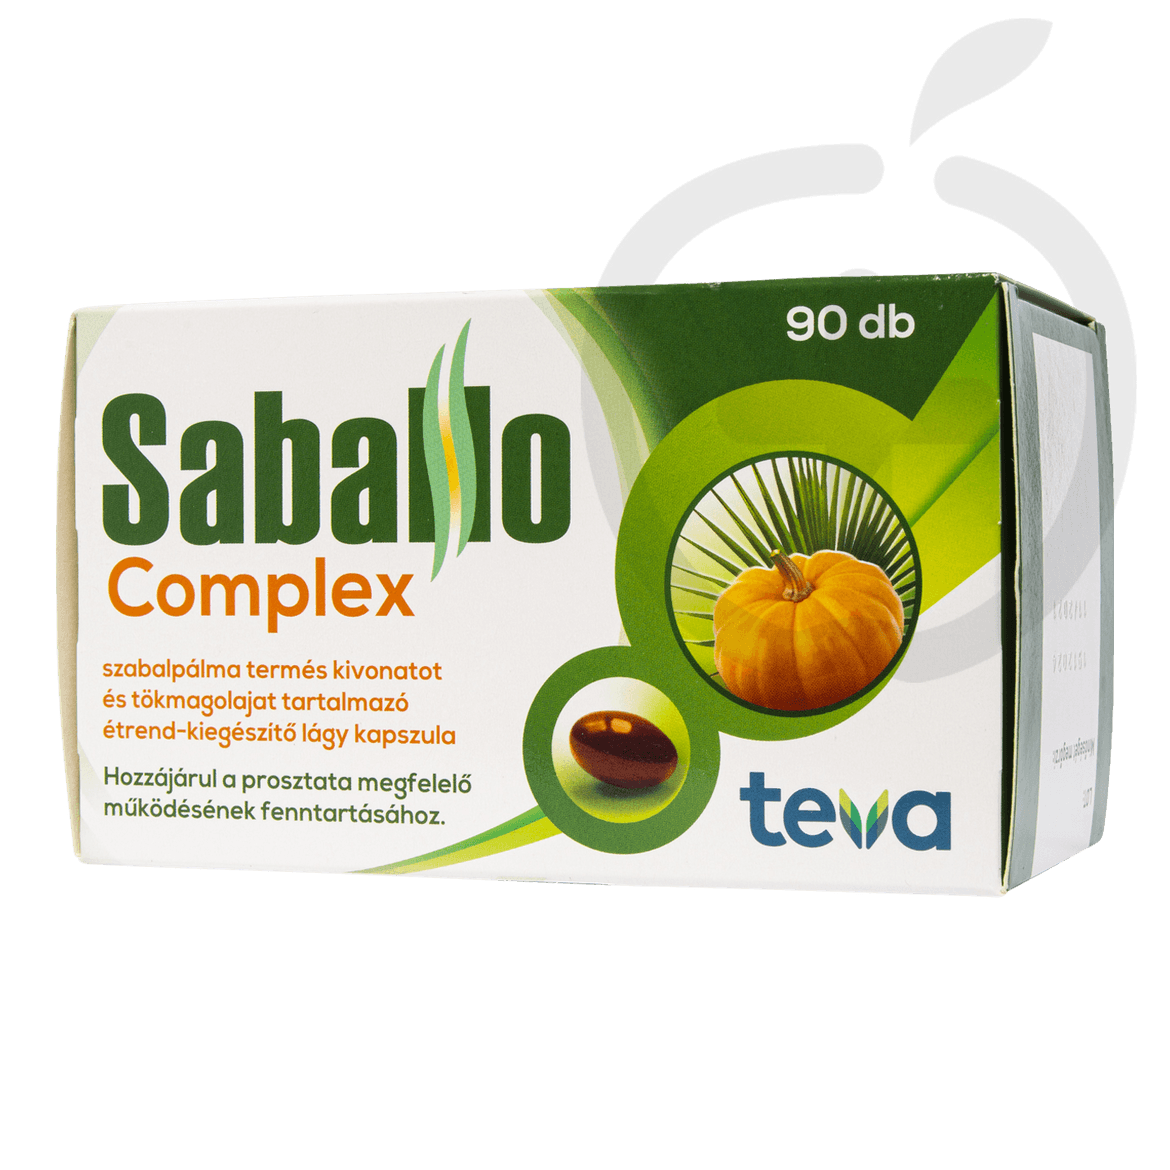 Saballo Complex szabalpálma termés kivonatot és tökmagolajat tartalmazó étrend-kiegészítő